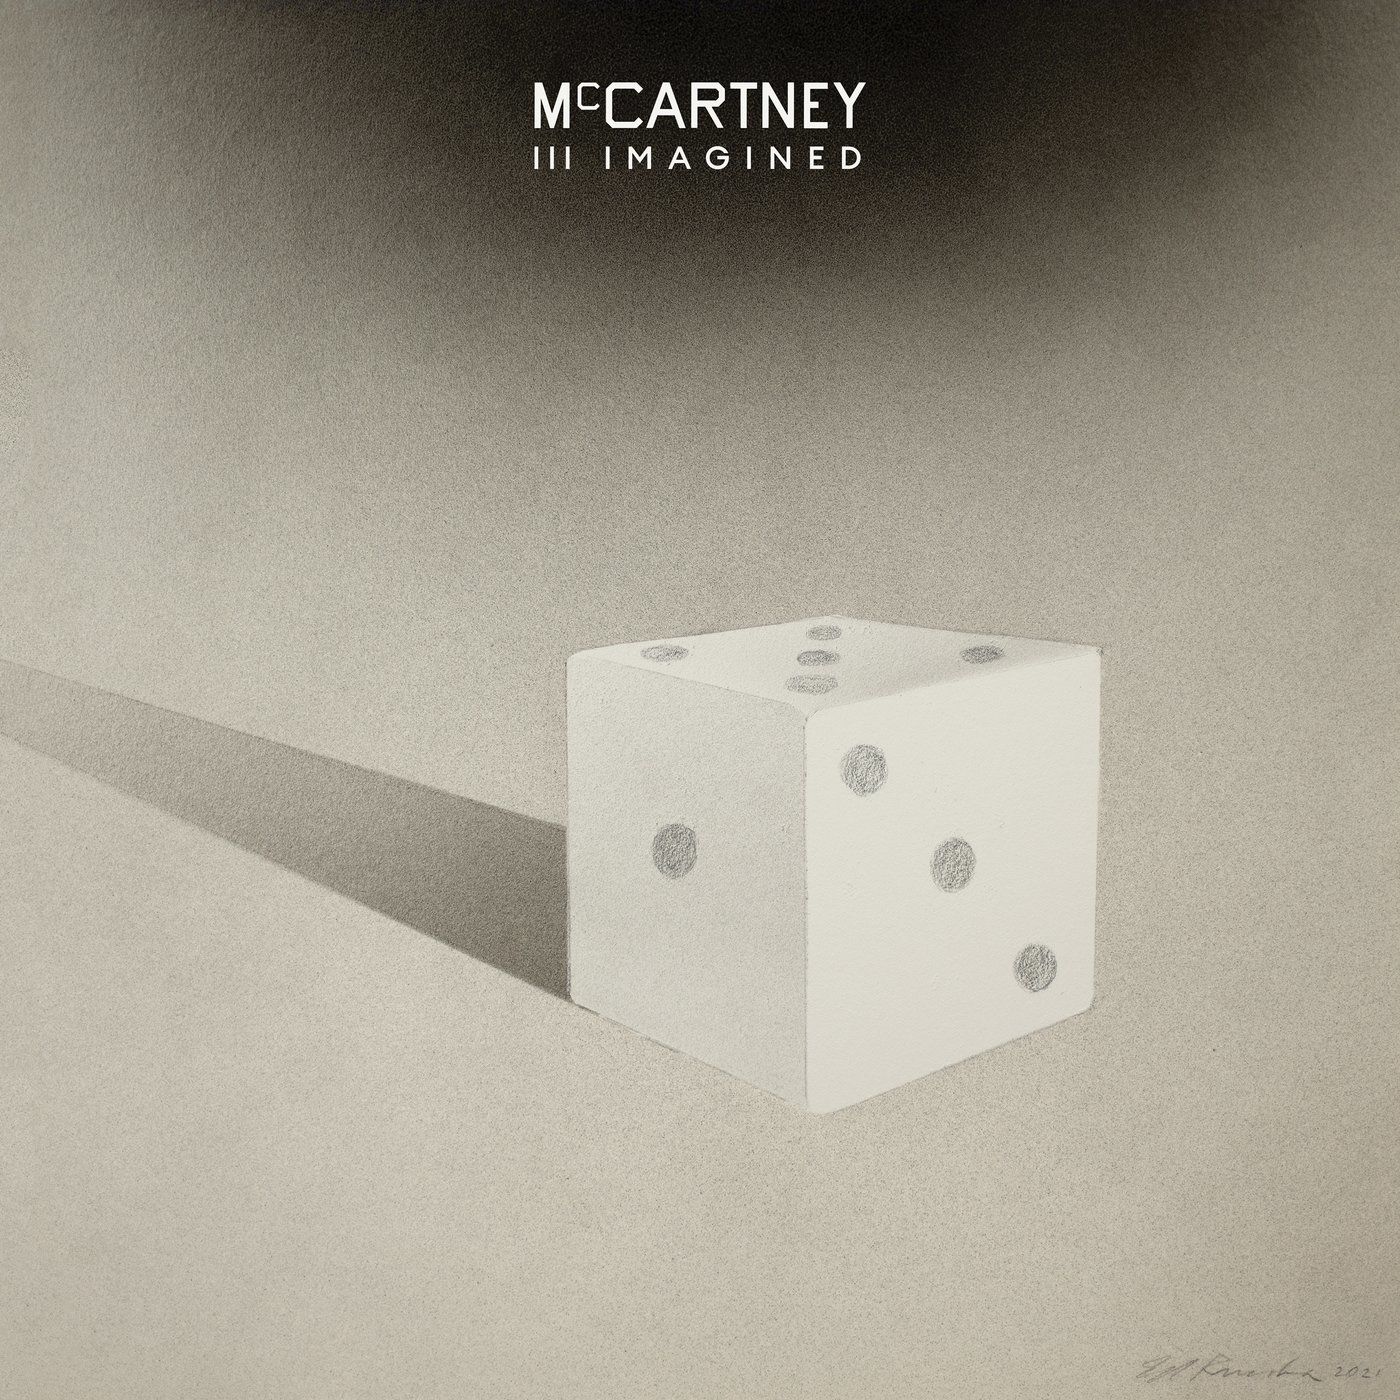 Paul McCartney--McCartney III Imagined-WEB-2021-OMA